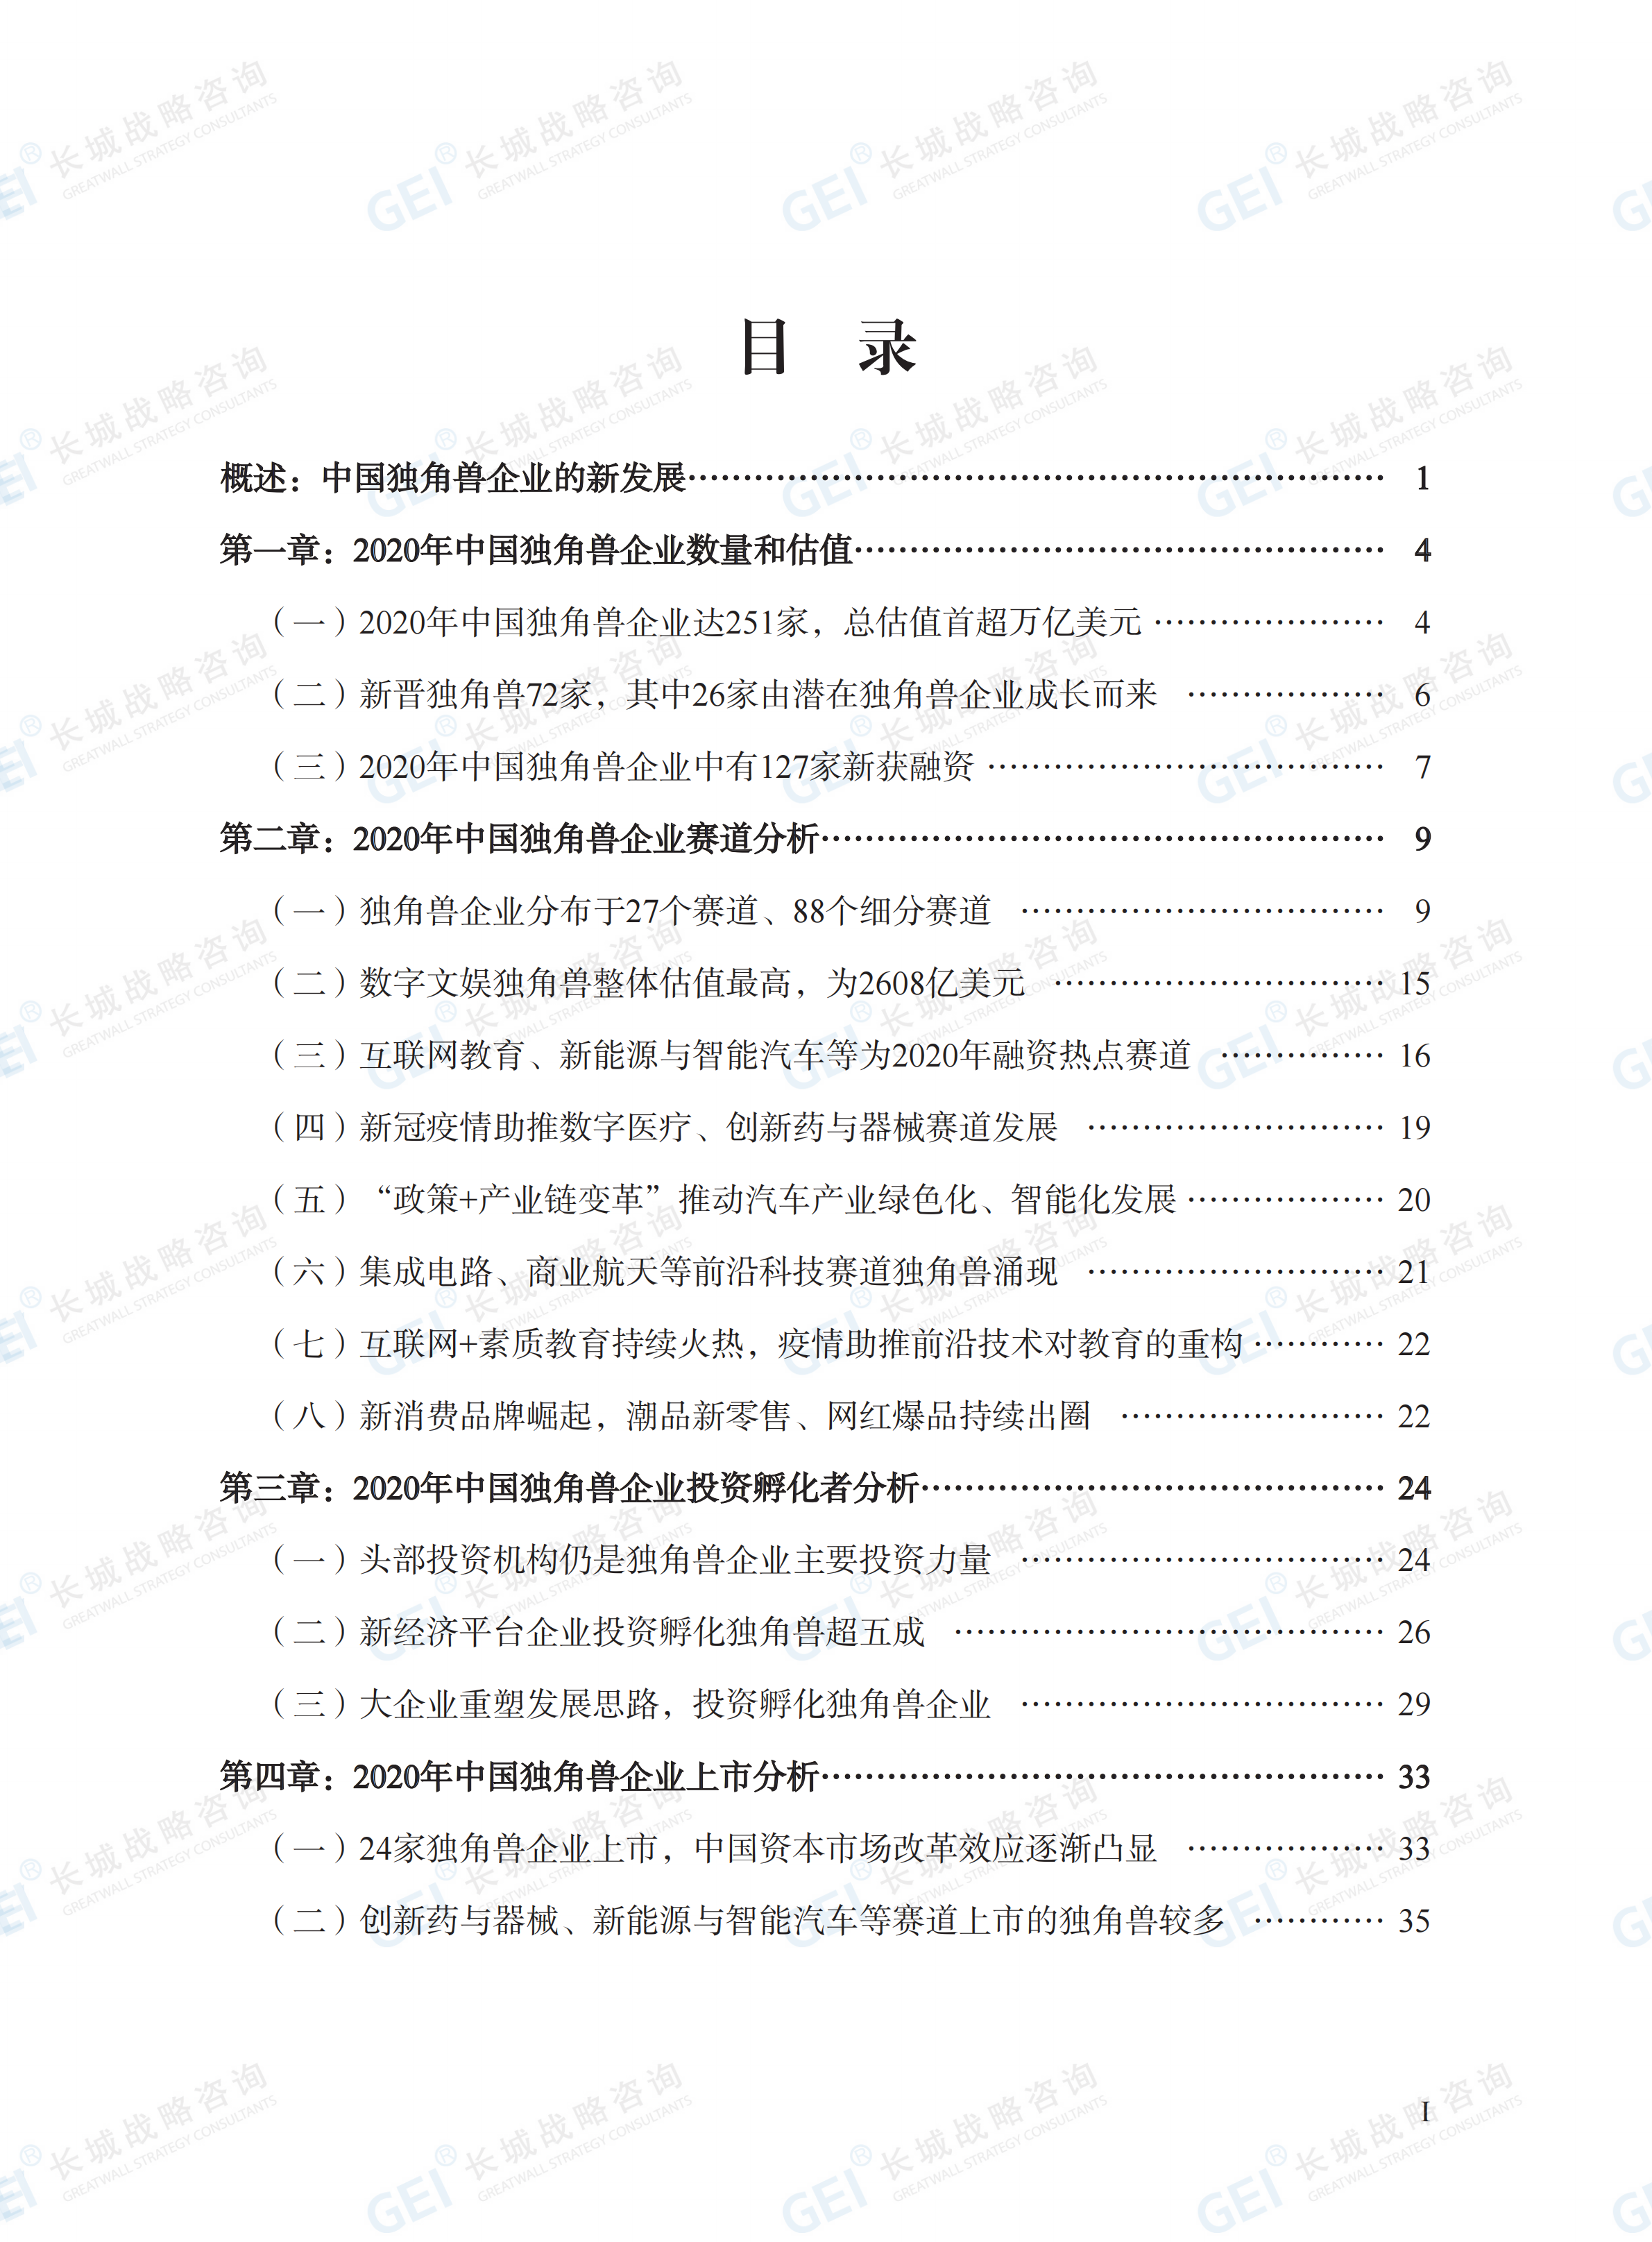 中国独角兽企业研究报告2021-水印(1)_05.png